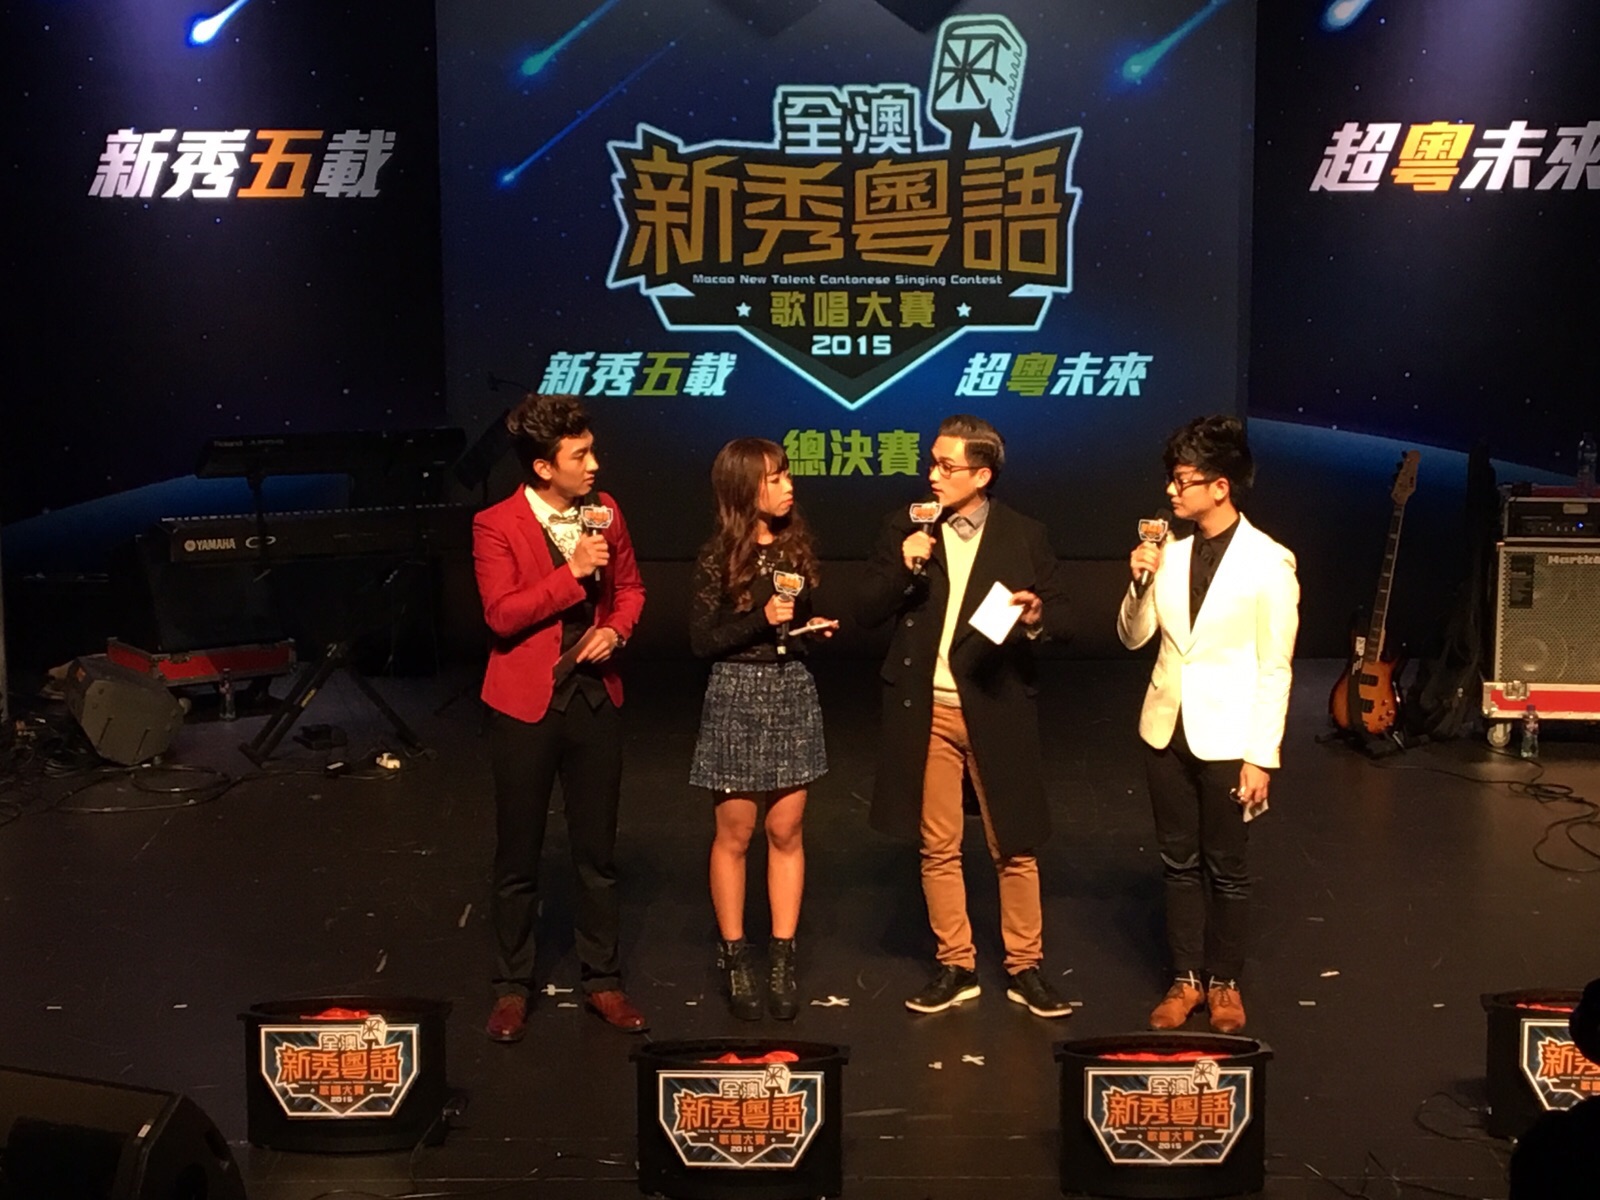 周啓陽 Elvis Chao司儀工作紀錄: 全澳新秀粵語歌唱大賽2015總決賽